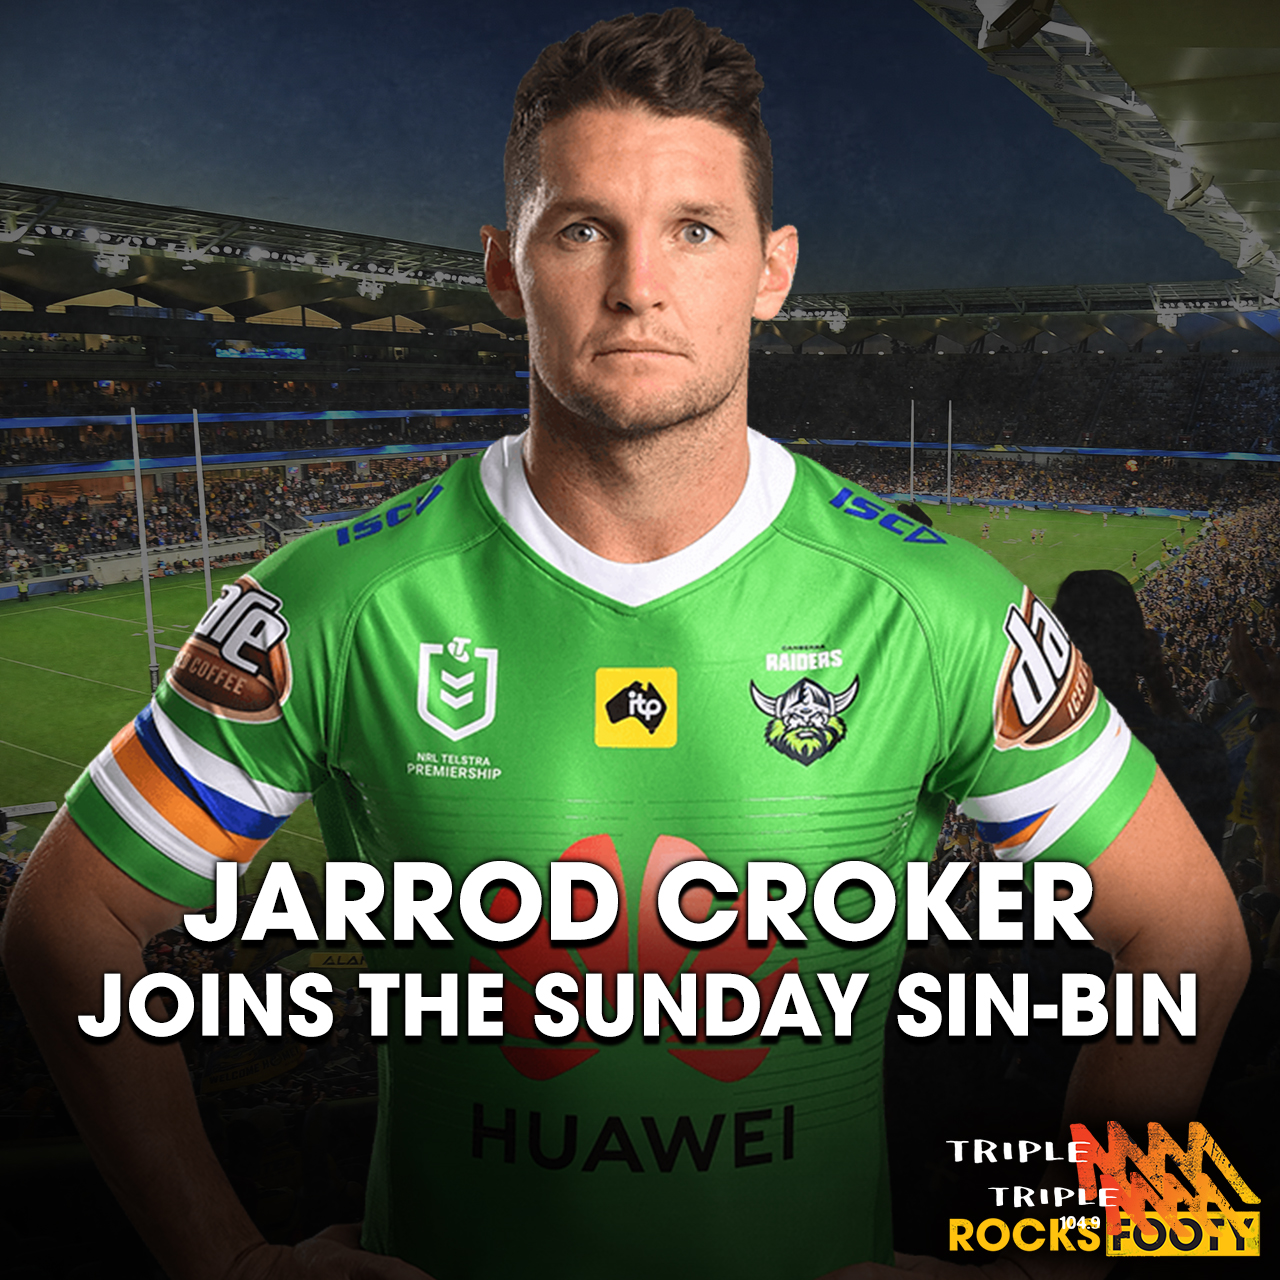 INTERVIEW: Canberra Raiders' Skipper Jarrod Croker Joins The Sunday Sin-bin